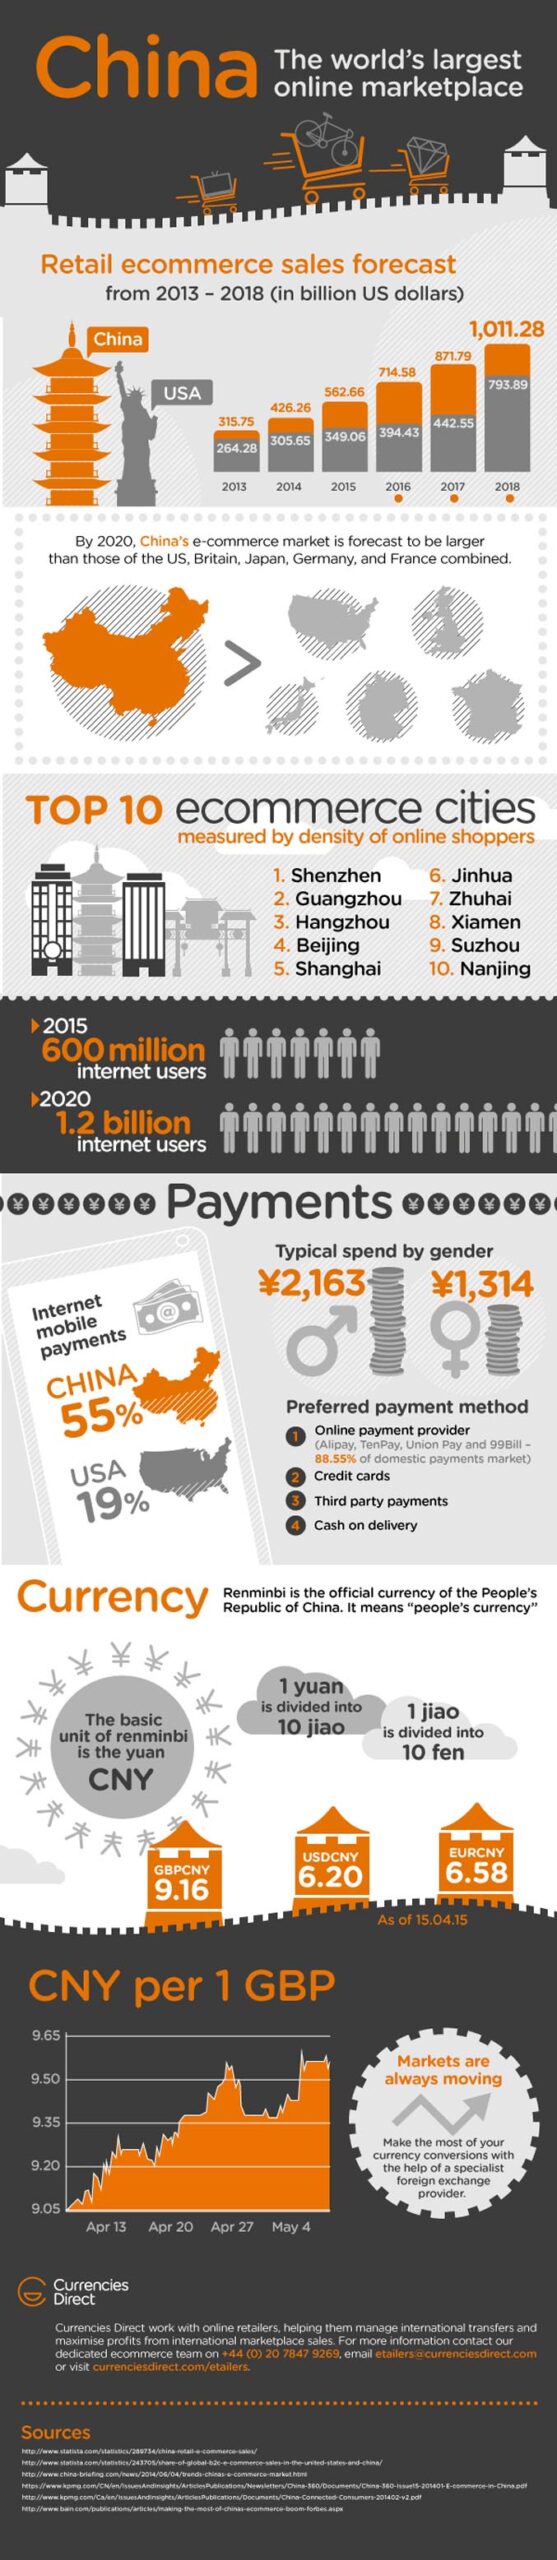 CFX---China-Infographic